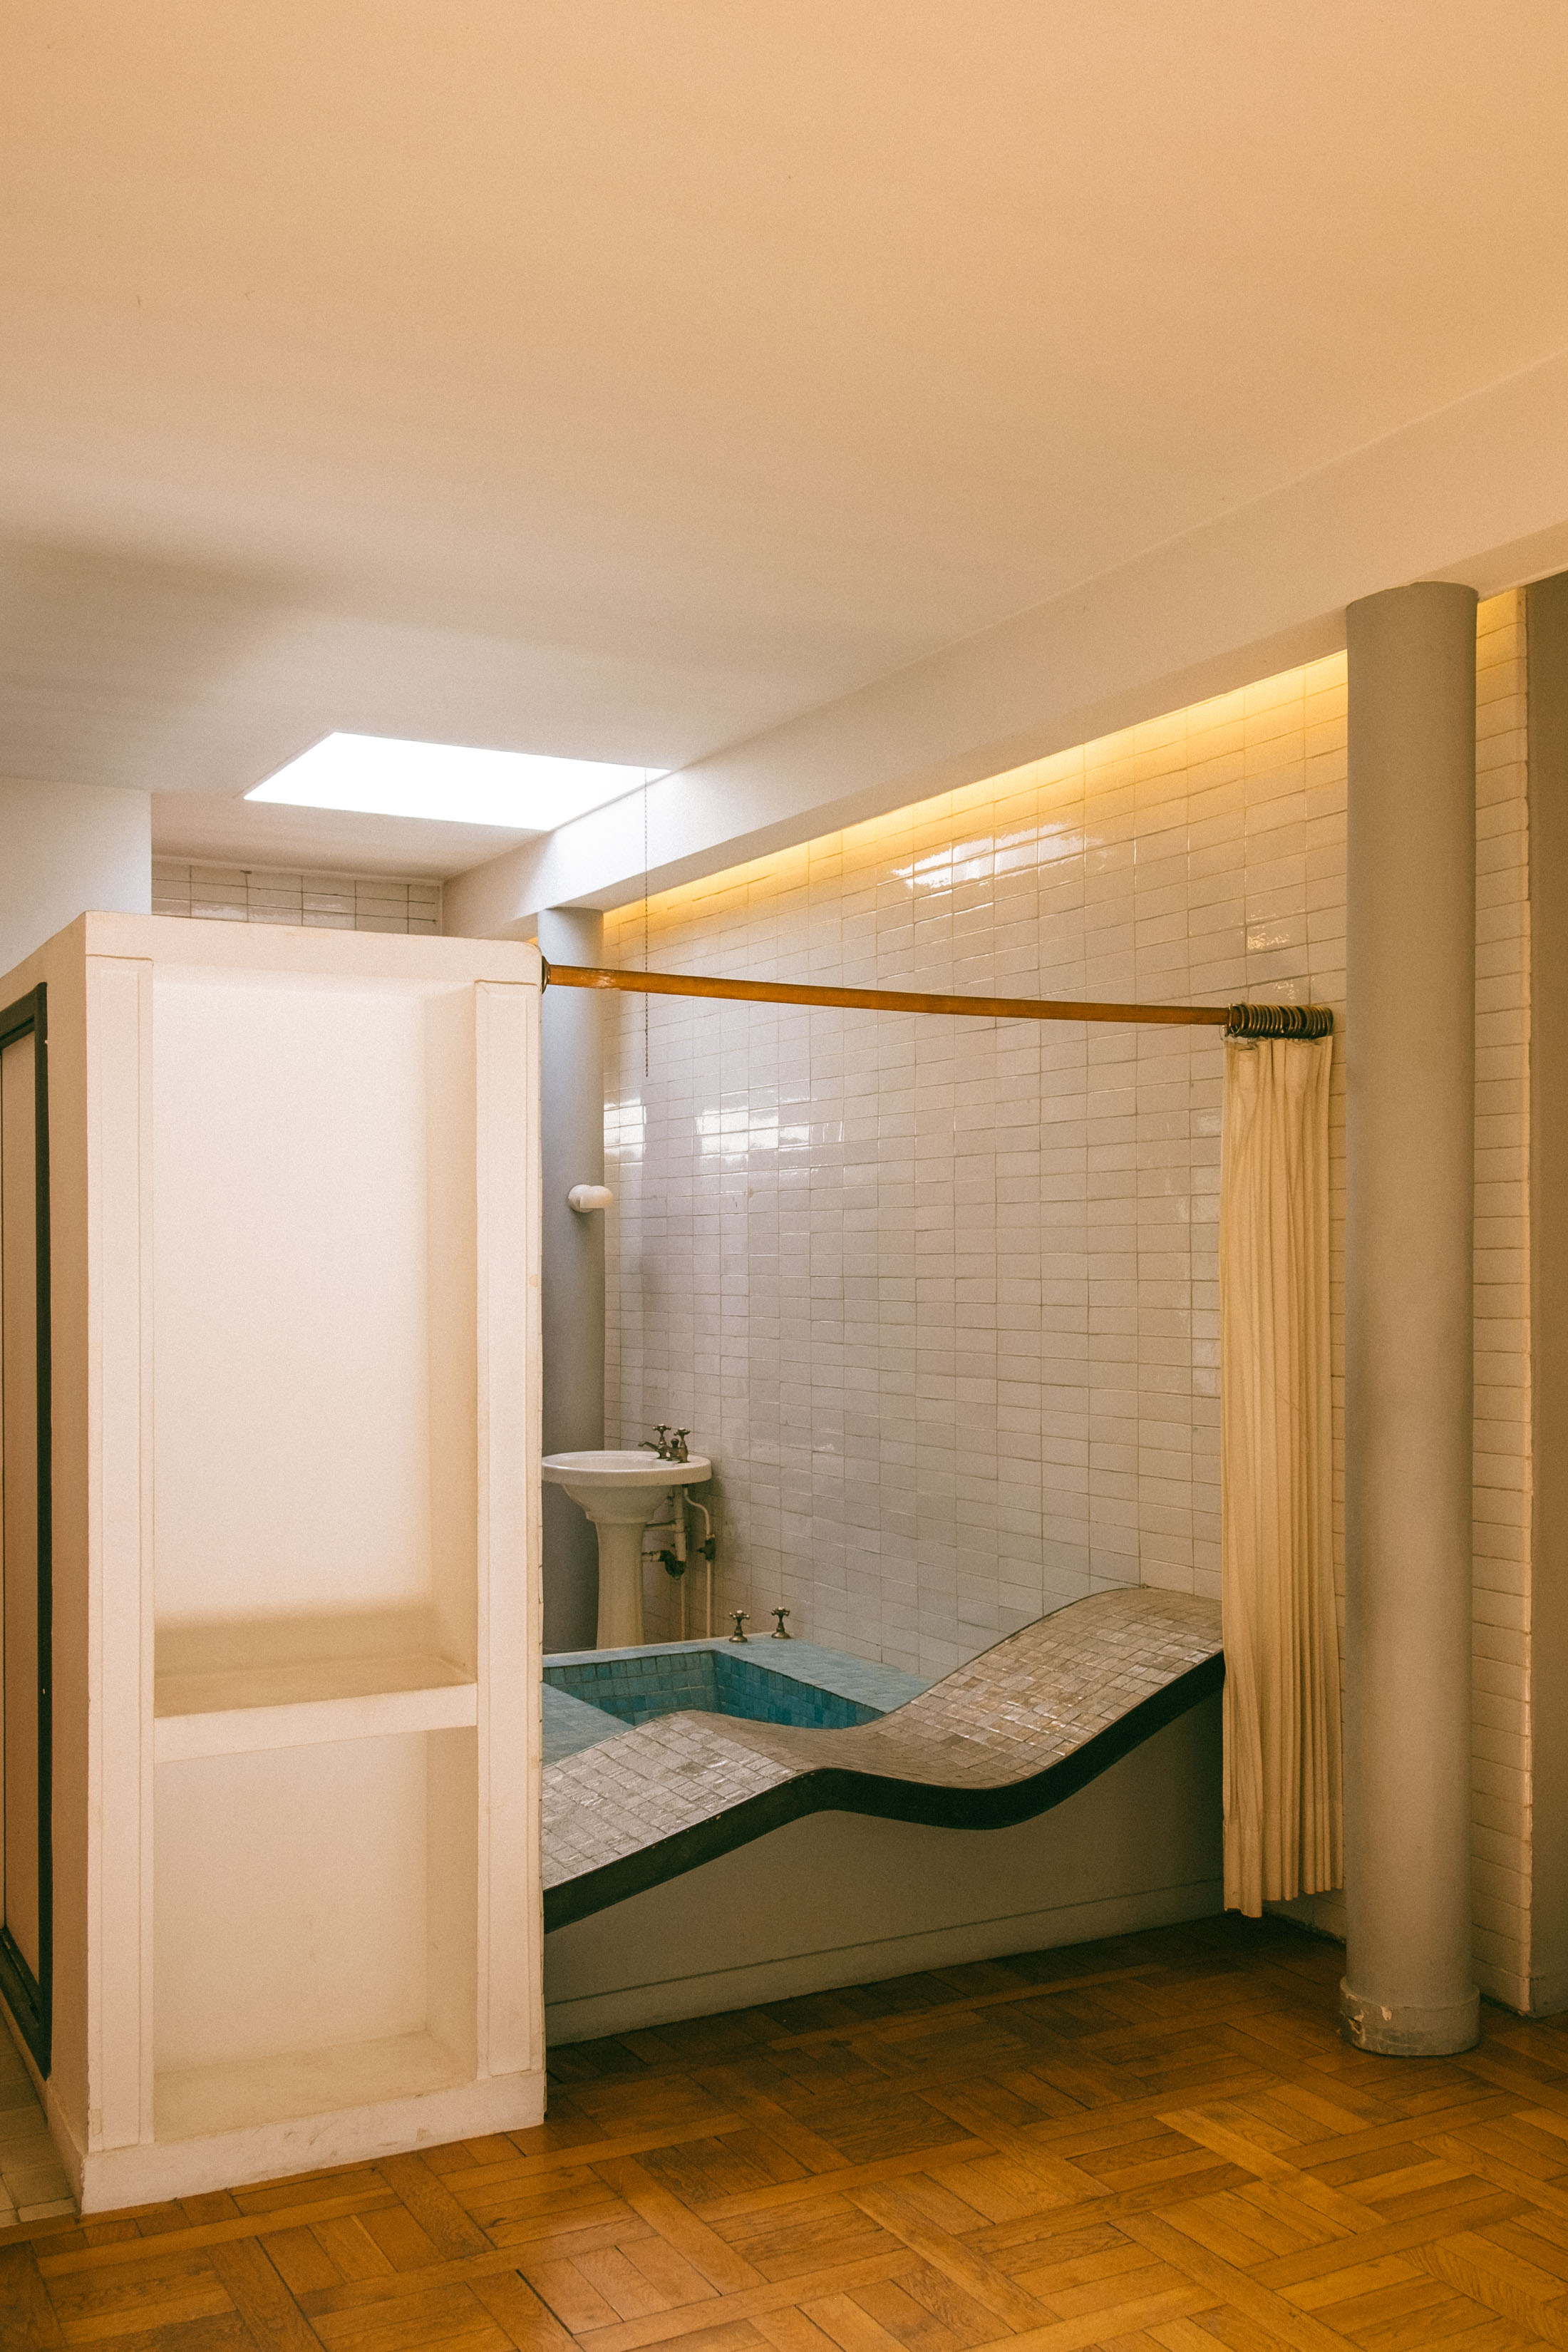 Bathroom at Le Corbusier's Villa Savoye